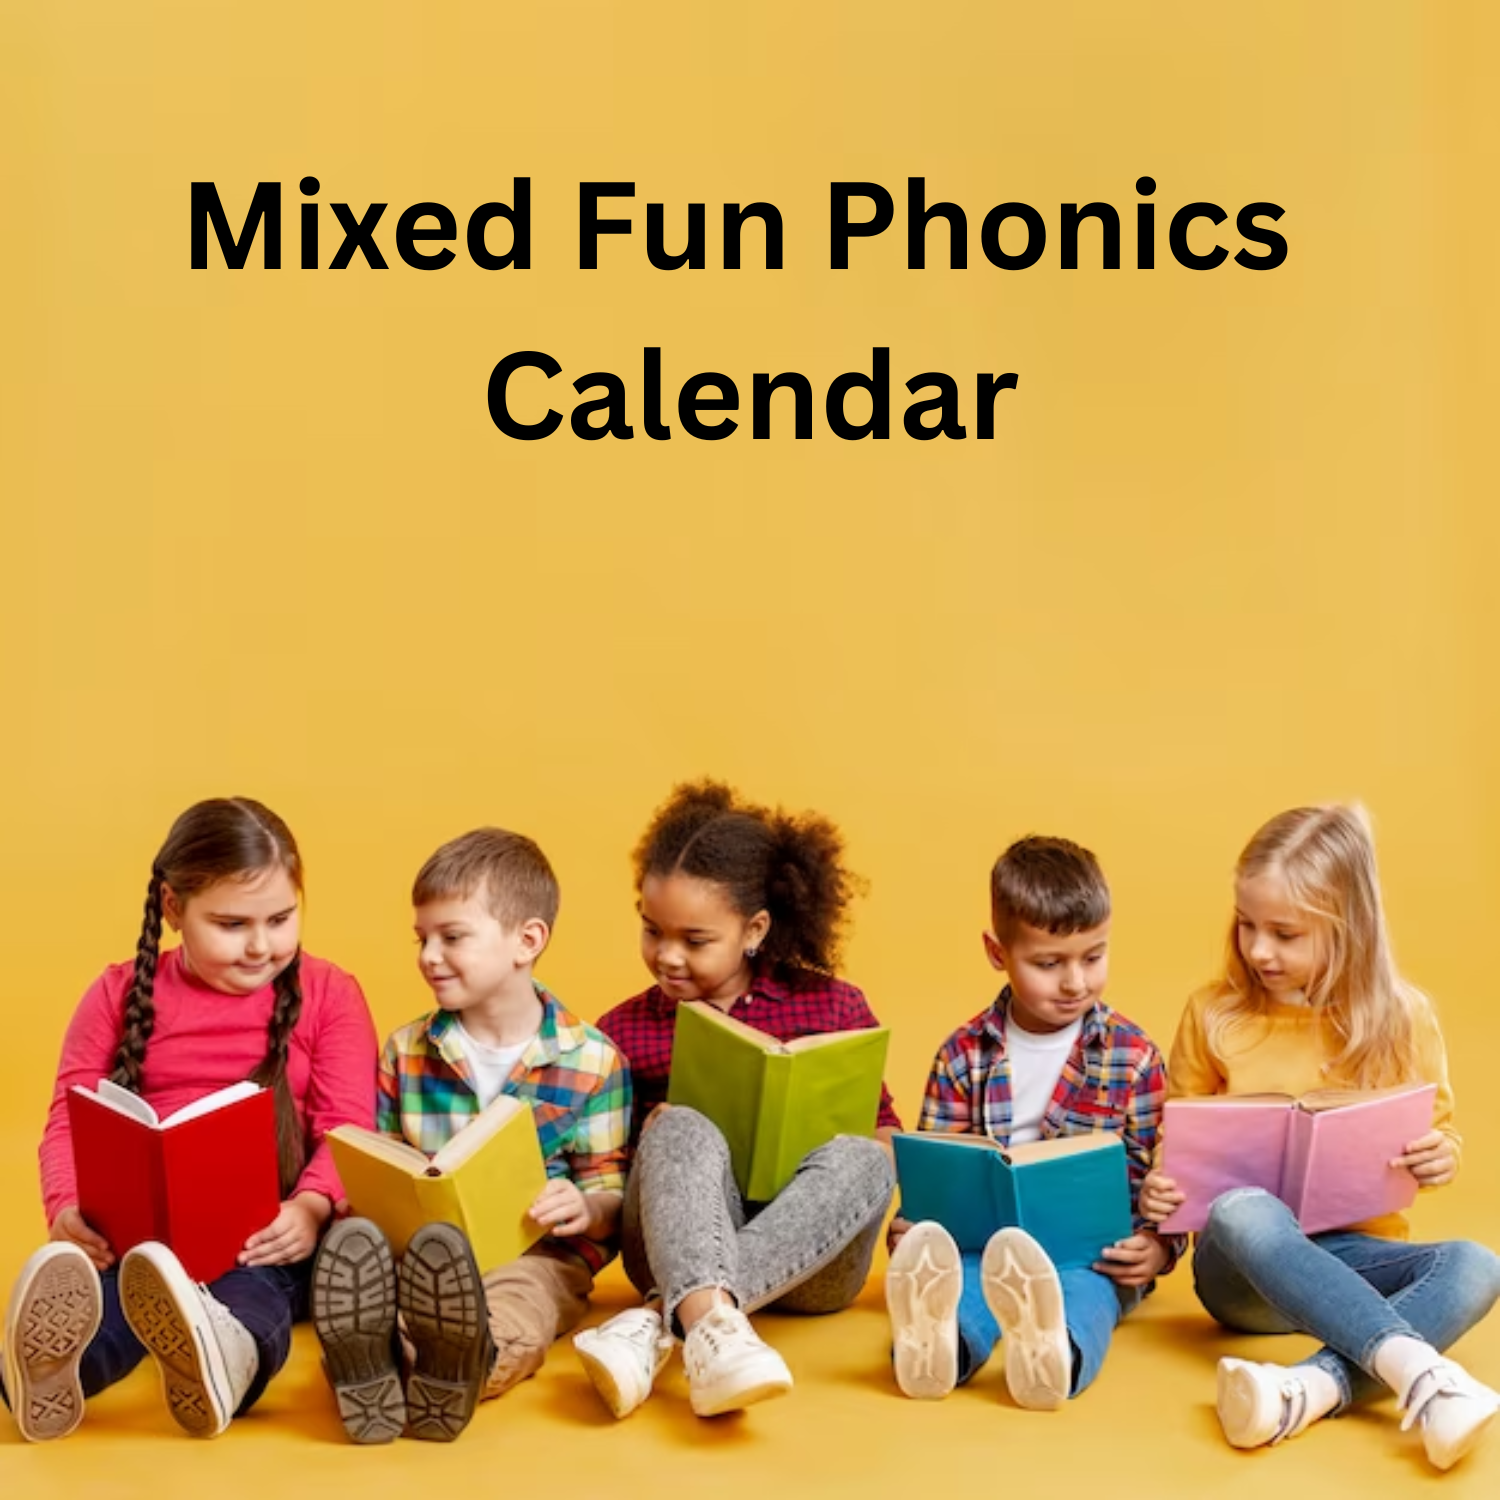 Mixed Fun Phonics Calendar